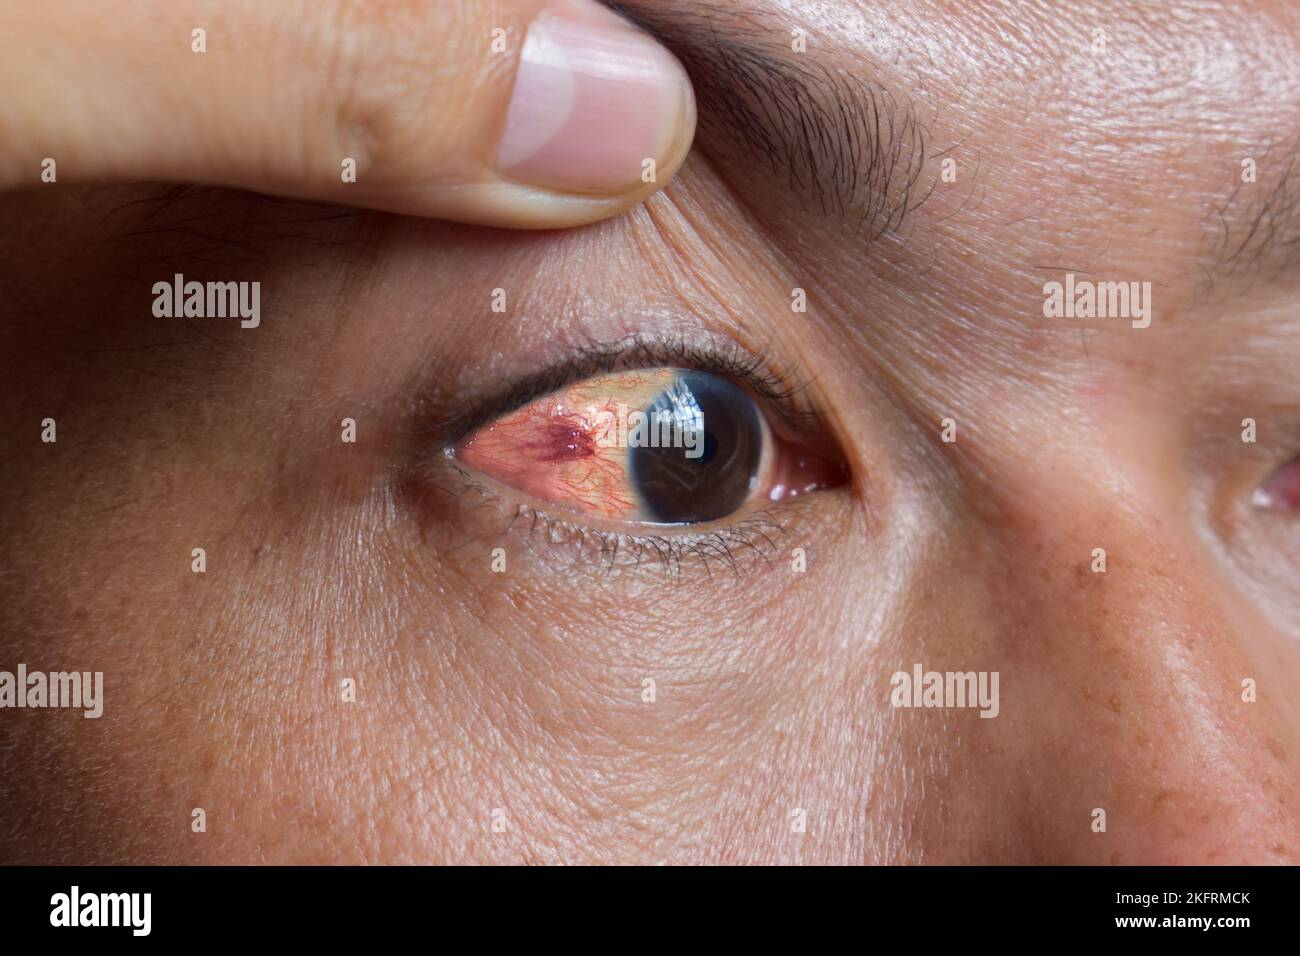 Okuläre Larva migrans oder erweiterte Gefäße im Auge des südostasiatischen Mannes. Stockfoto